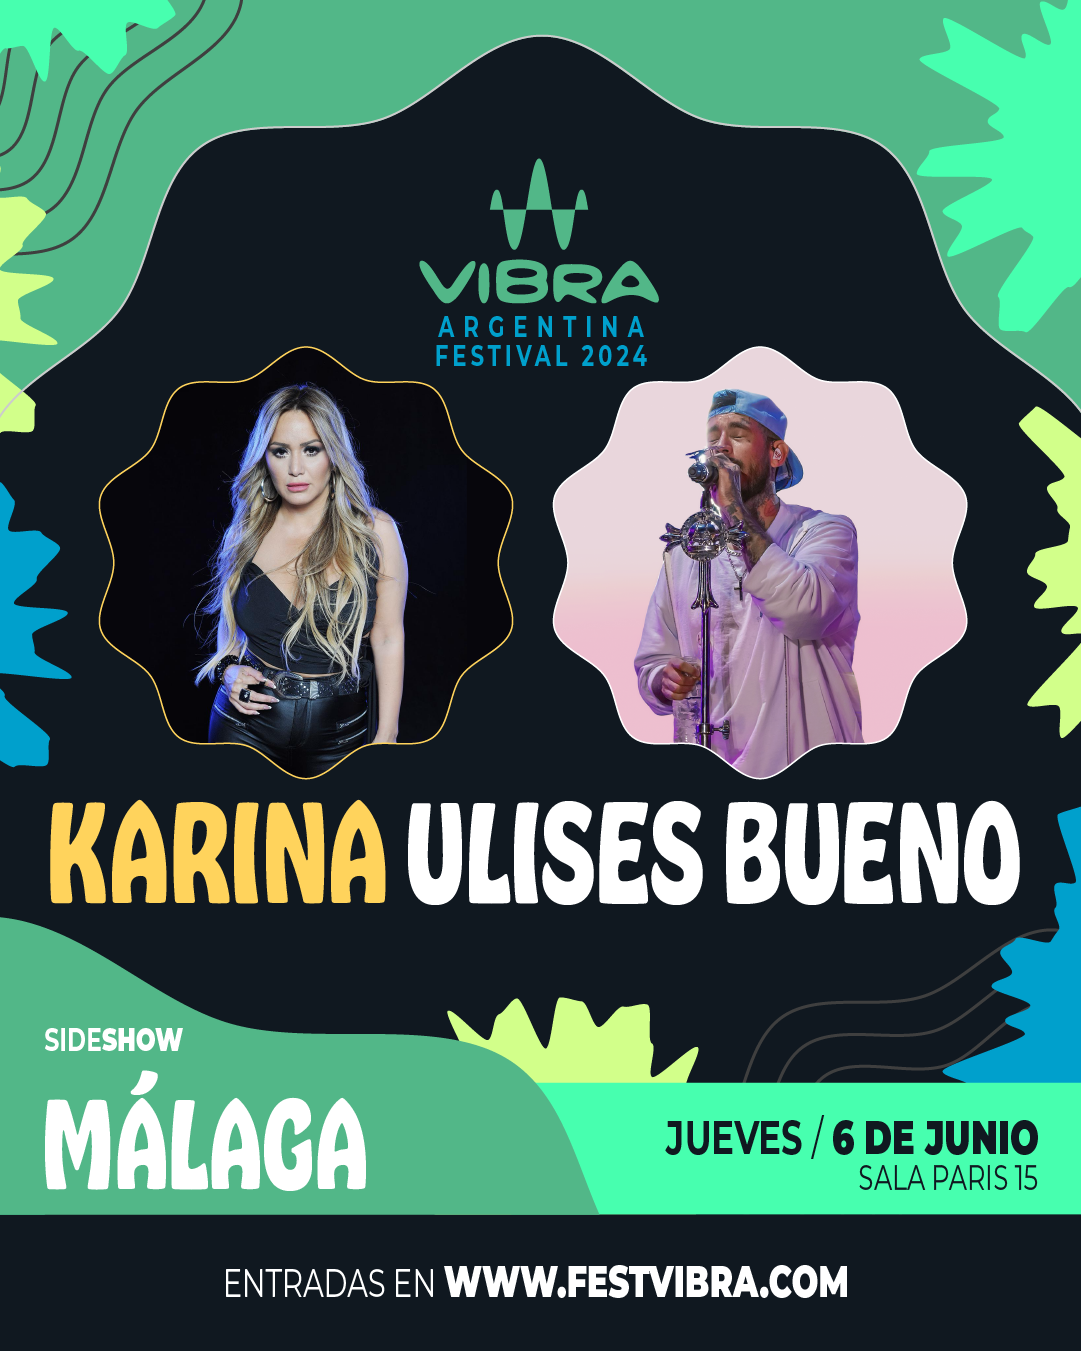 VIBRA ARGENTINA FESTIVAL 2024 en MALAGA, sala paris 15, Jueves 6 Junio Karina y Ulises Bueno. Entradas y Info: www.festvibra.com